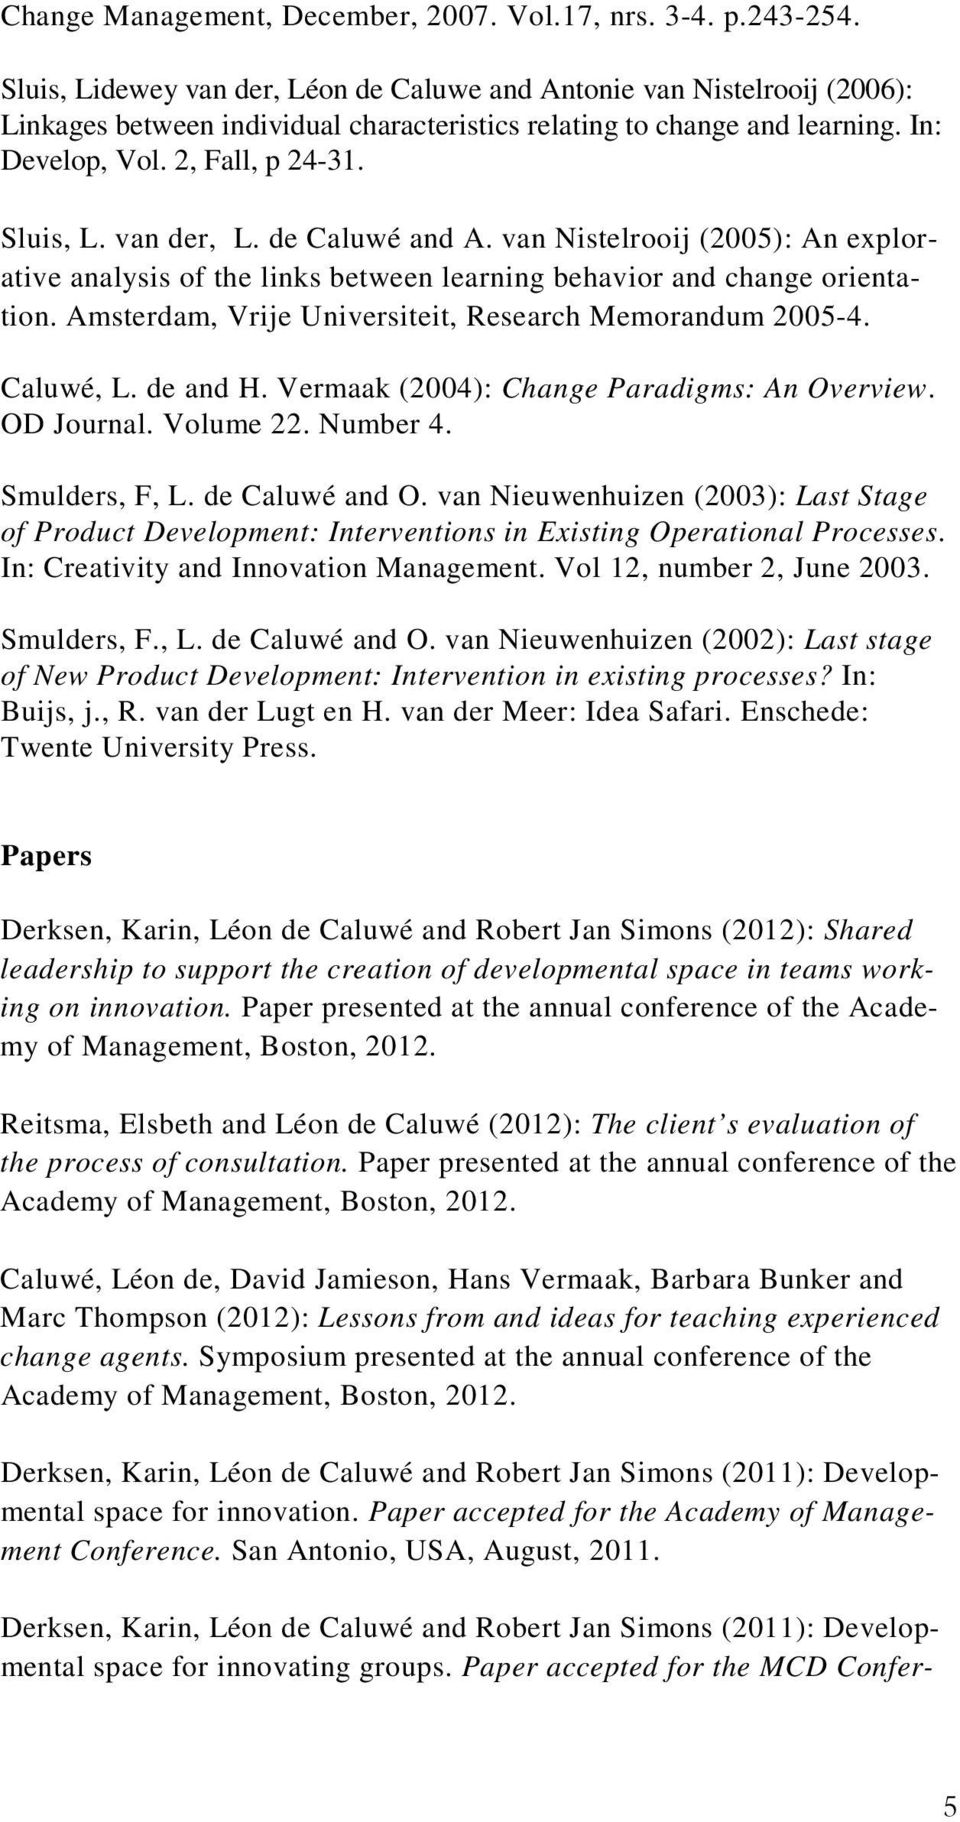 van der, L. de Caluwé and A. van Nistelrooij (2005): An explorative analysis of the links between learning behavior and change orientation. Amsterdam, Vrije Universiteit, Research Memorandum 2005-4.